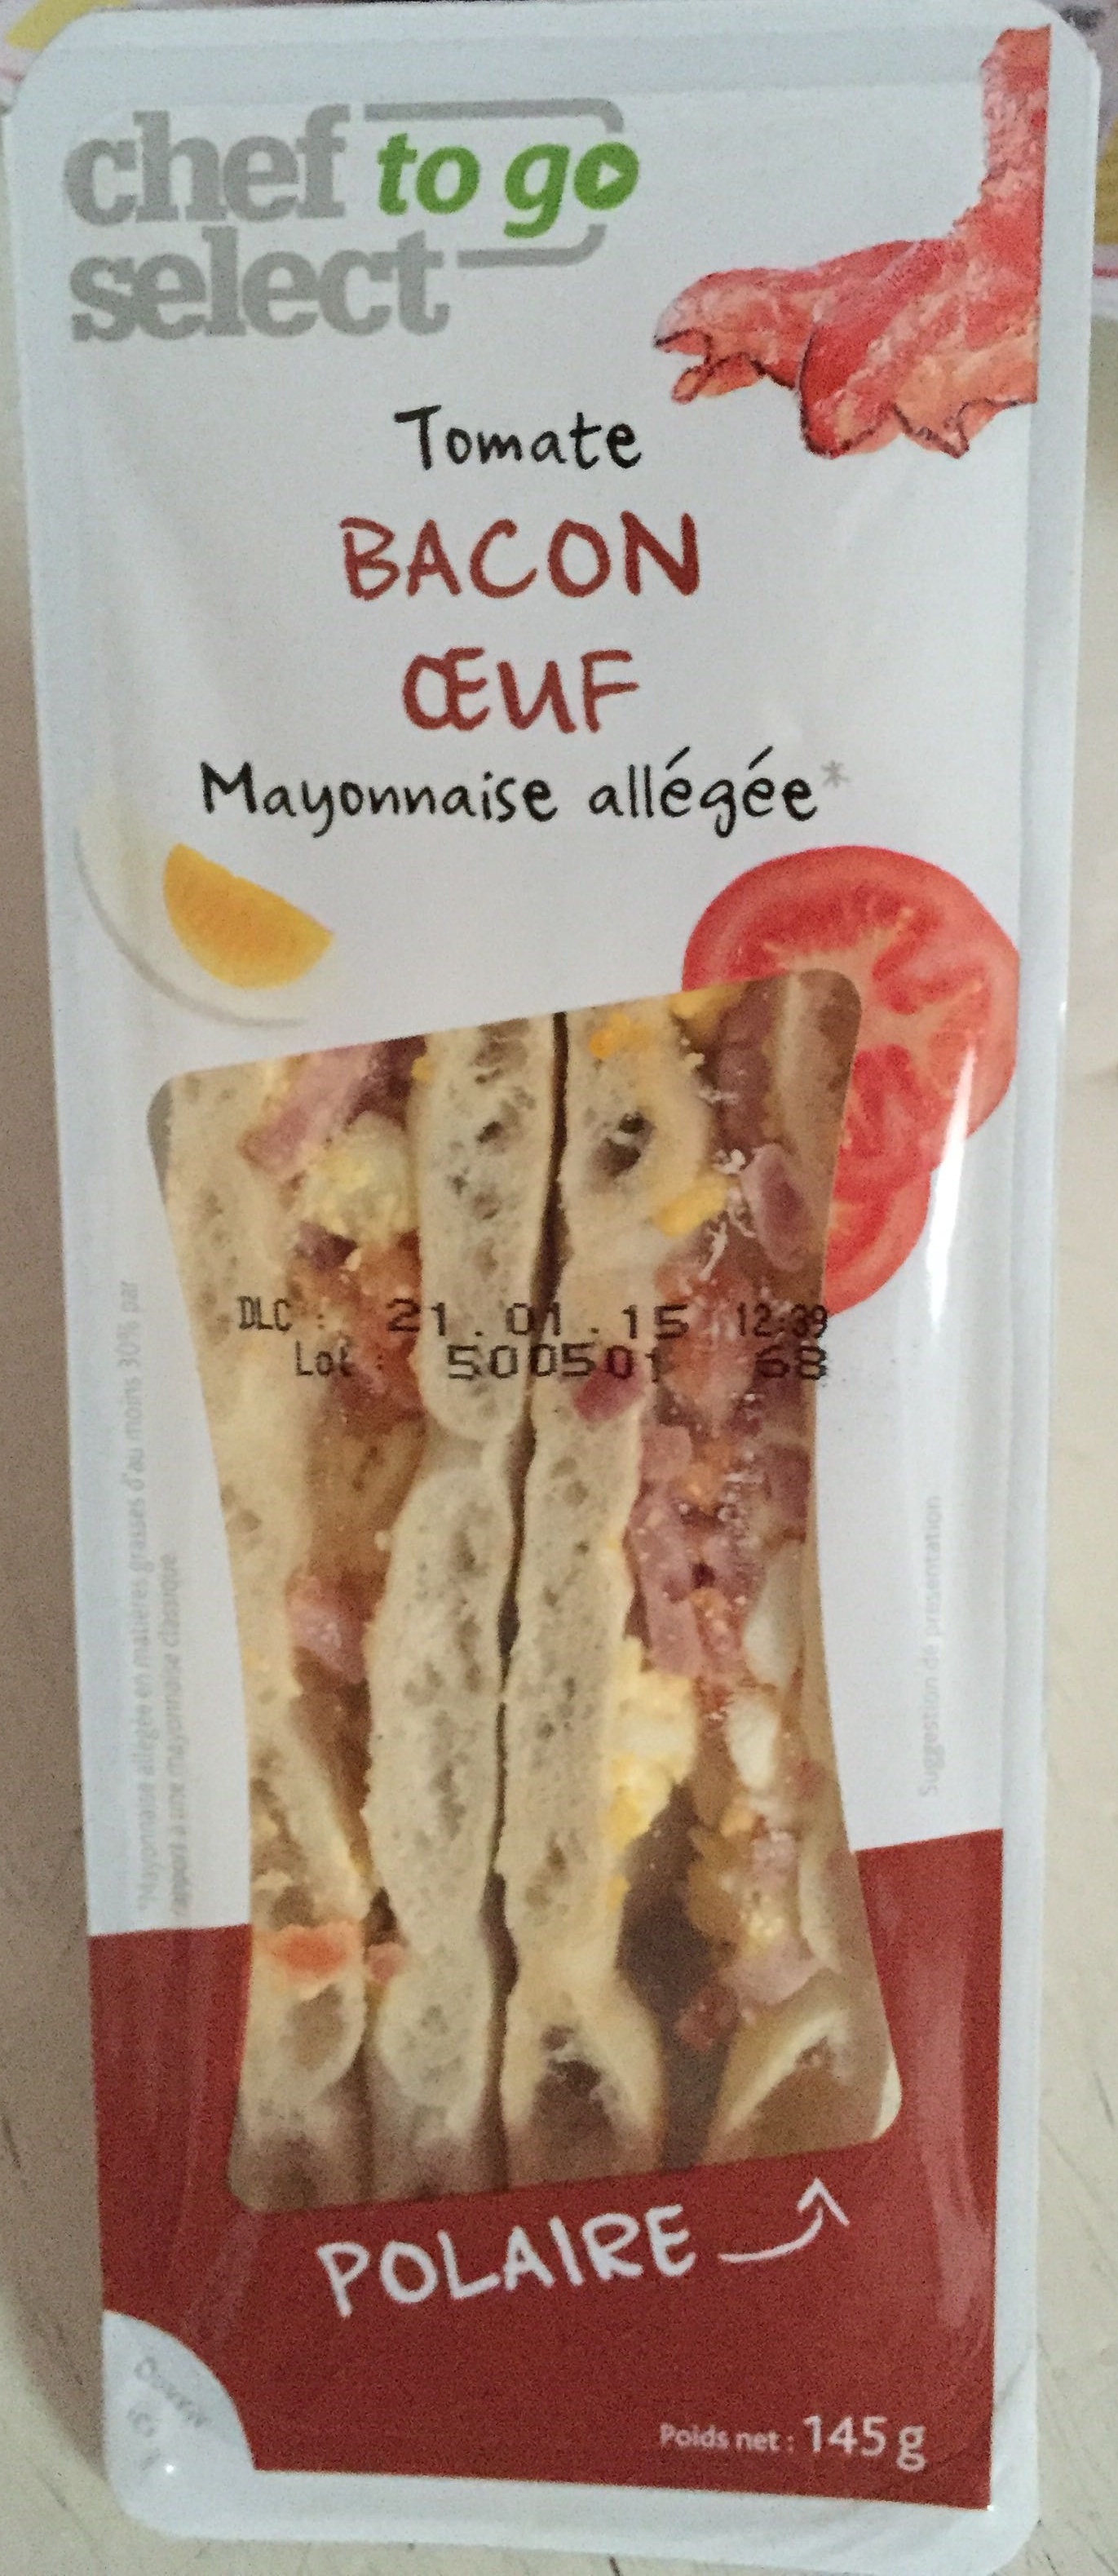 Sandwich polaire Tomate - Select Go allégée Chef Mayonnaise - Bacon Oeuf g 145 to